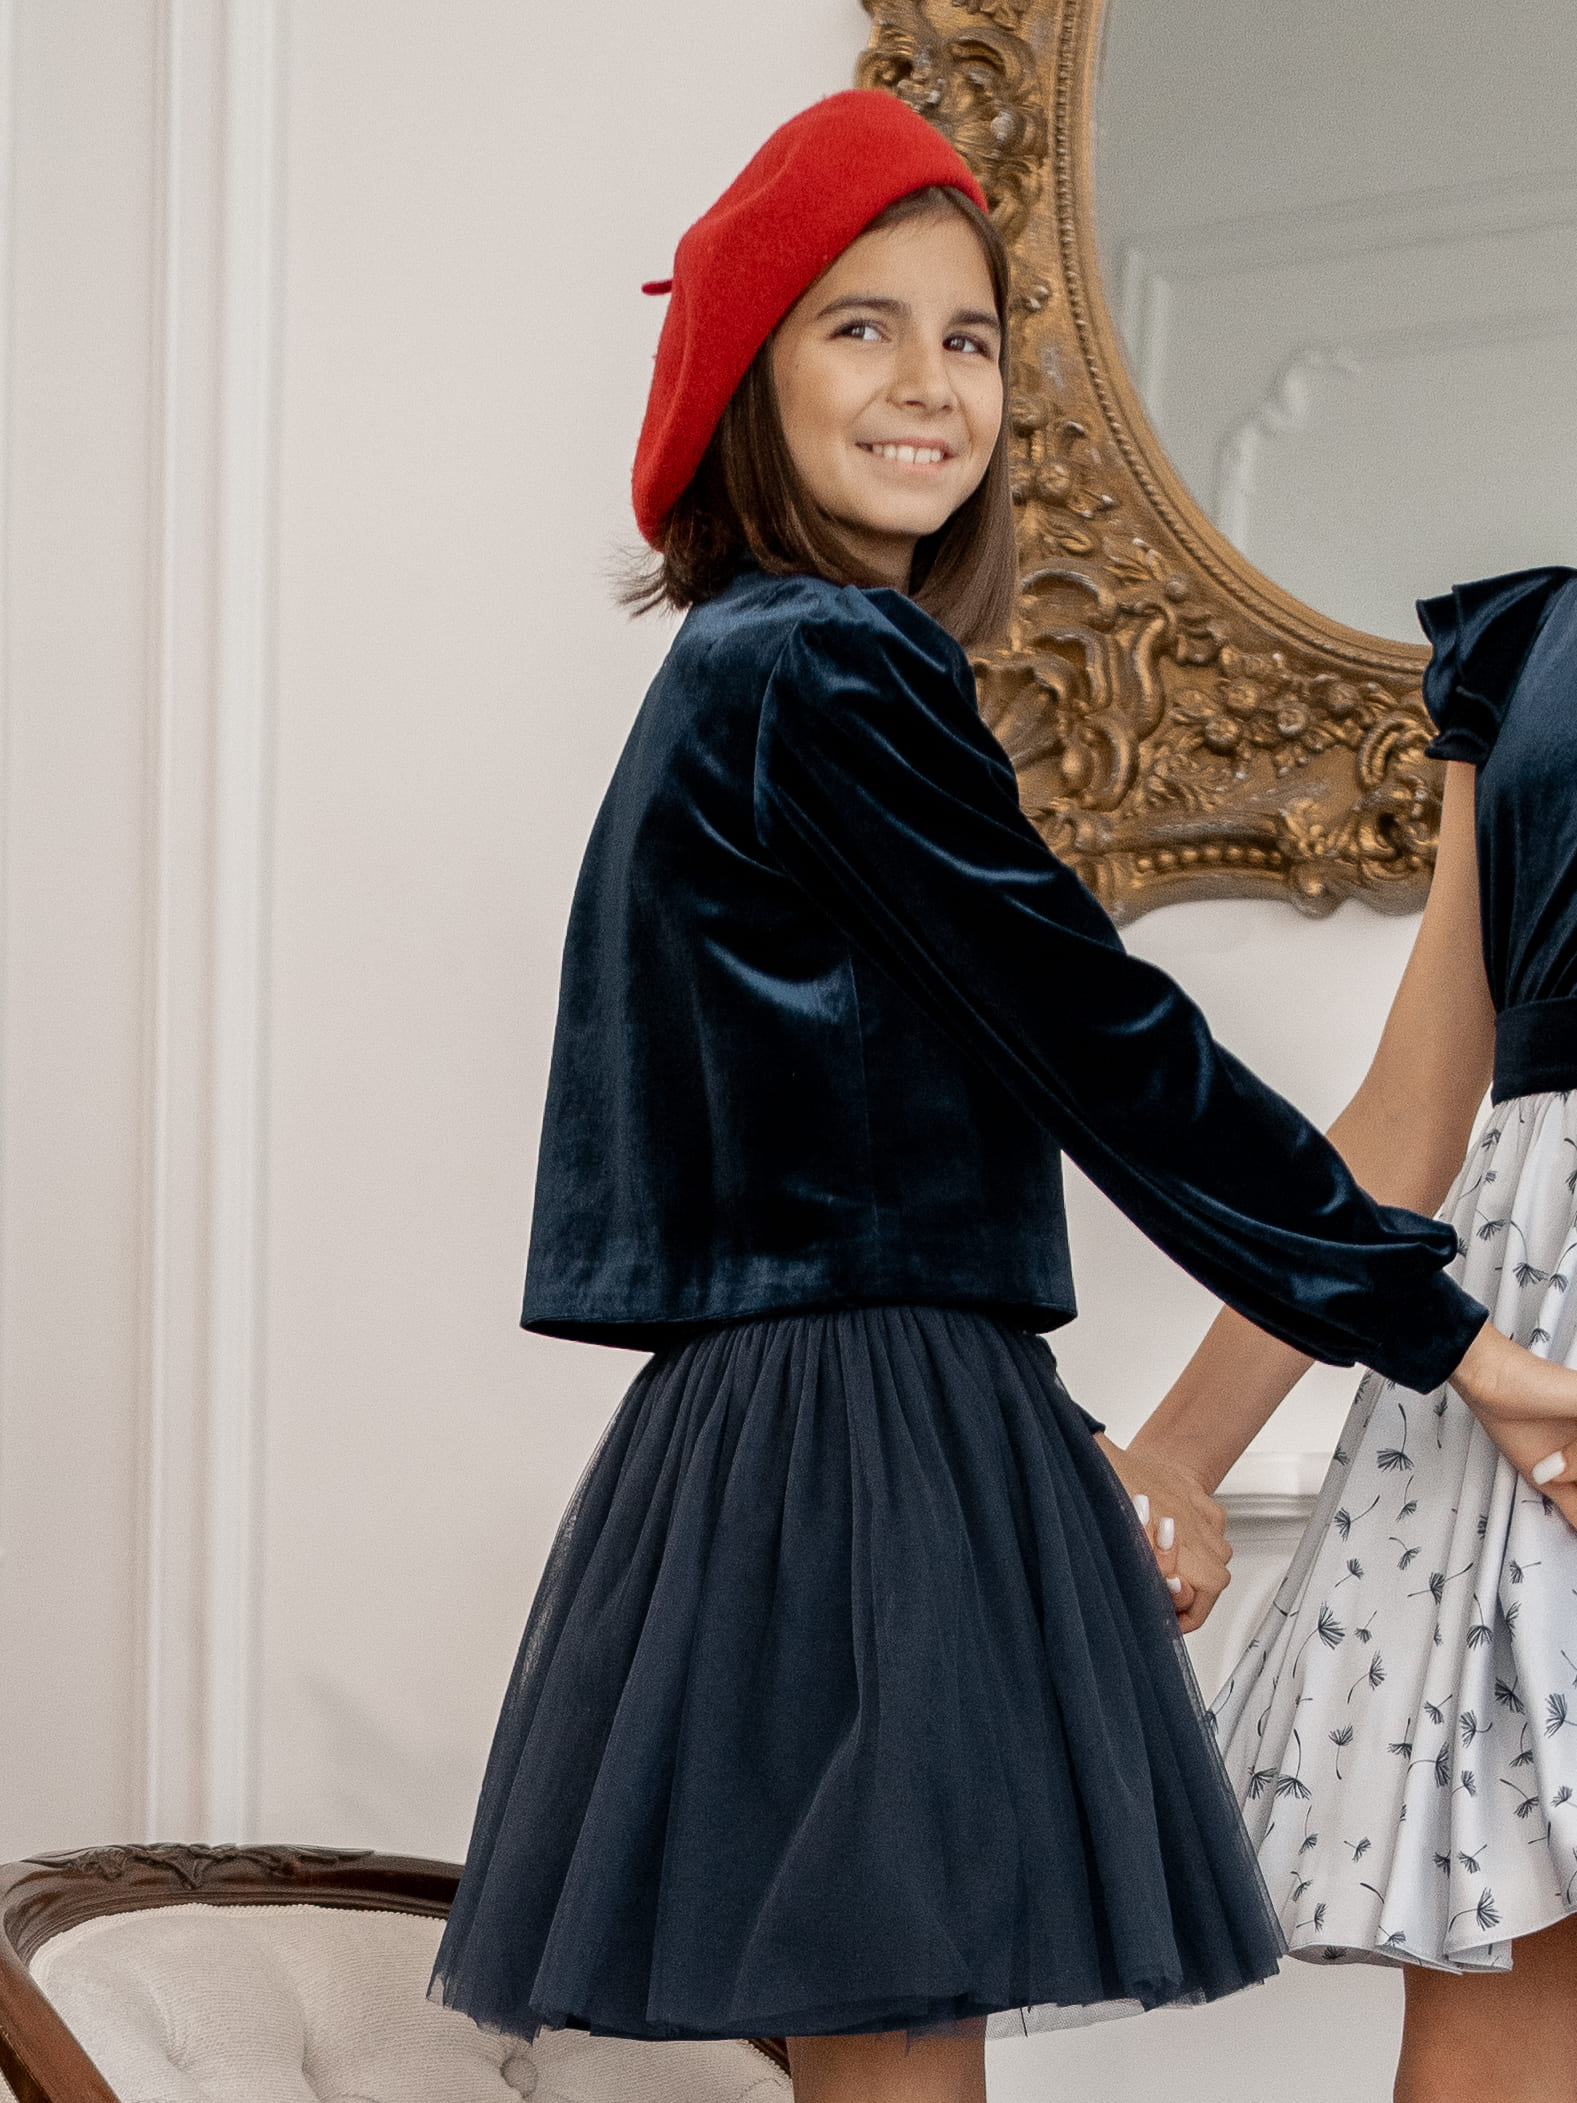 Каталог Платье нарядное ТСБ (брусничный) от Маленькая леди за руб. брусничный цвет